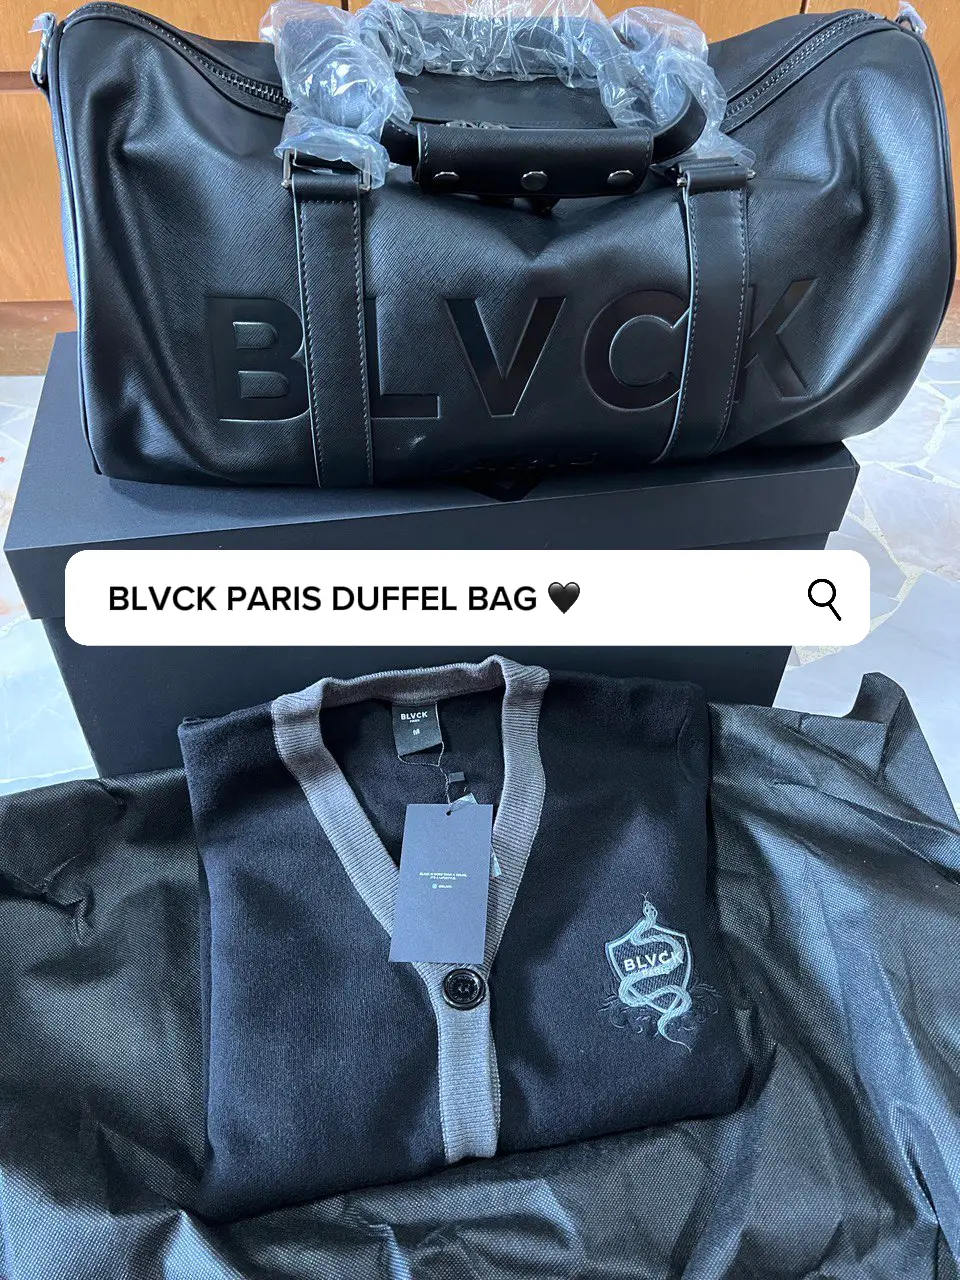 Paris Duffel Bag